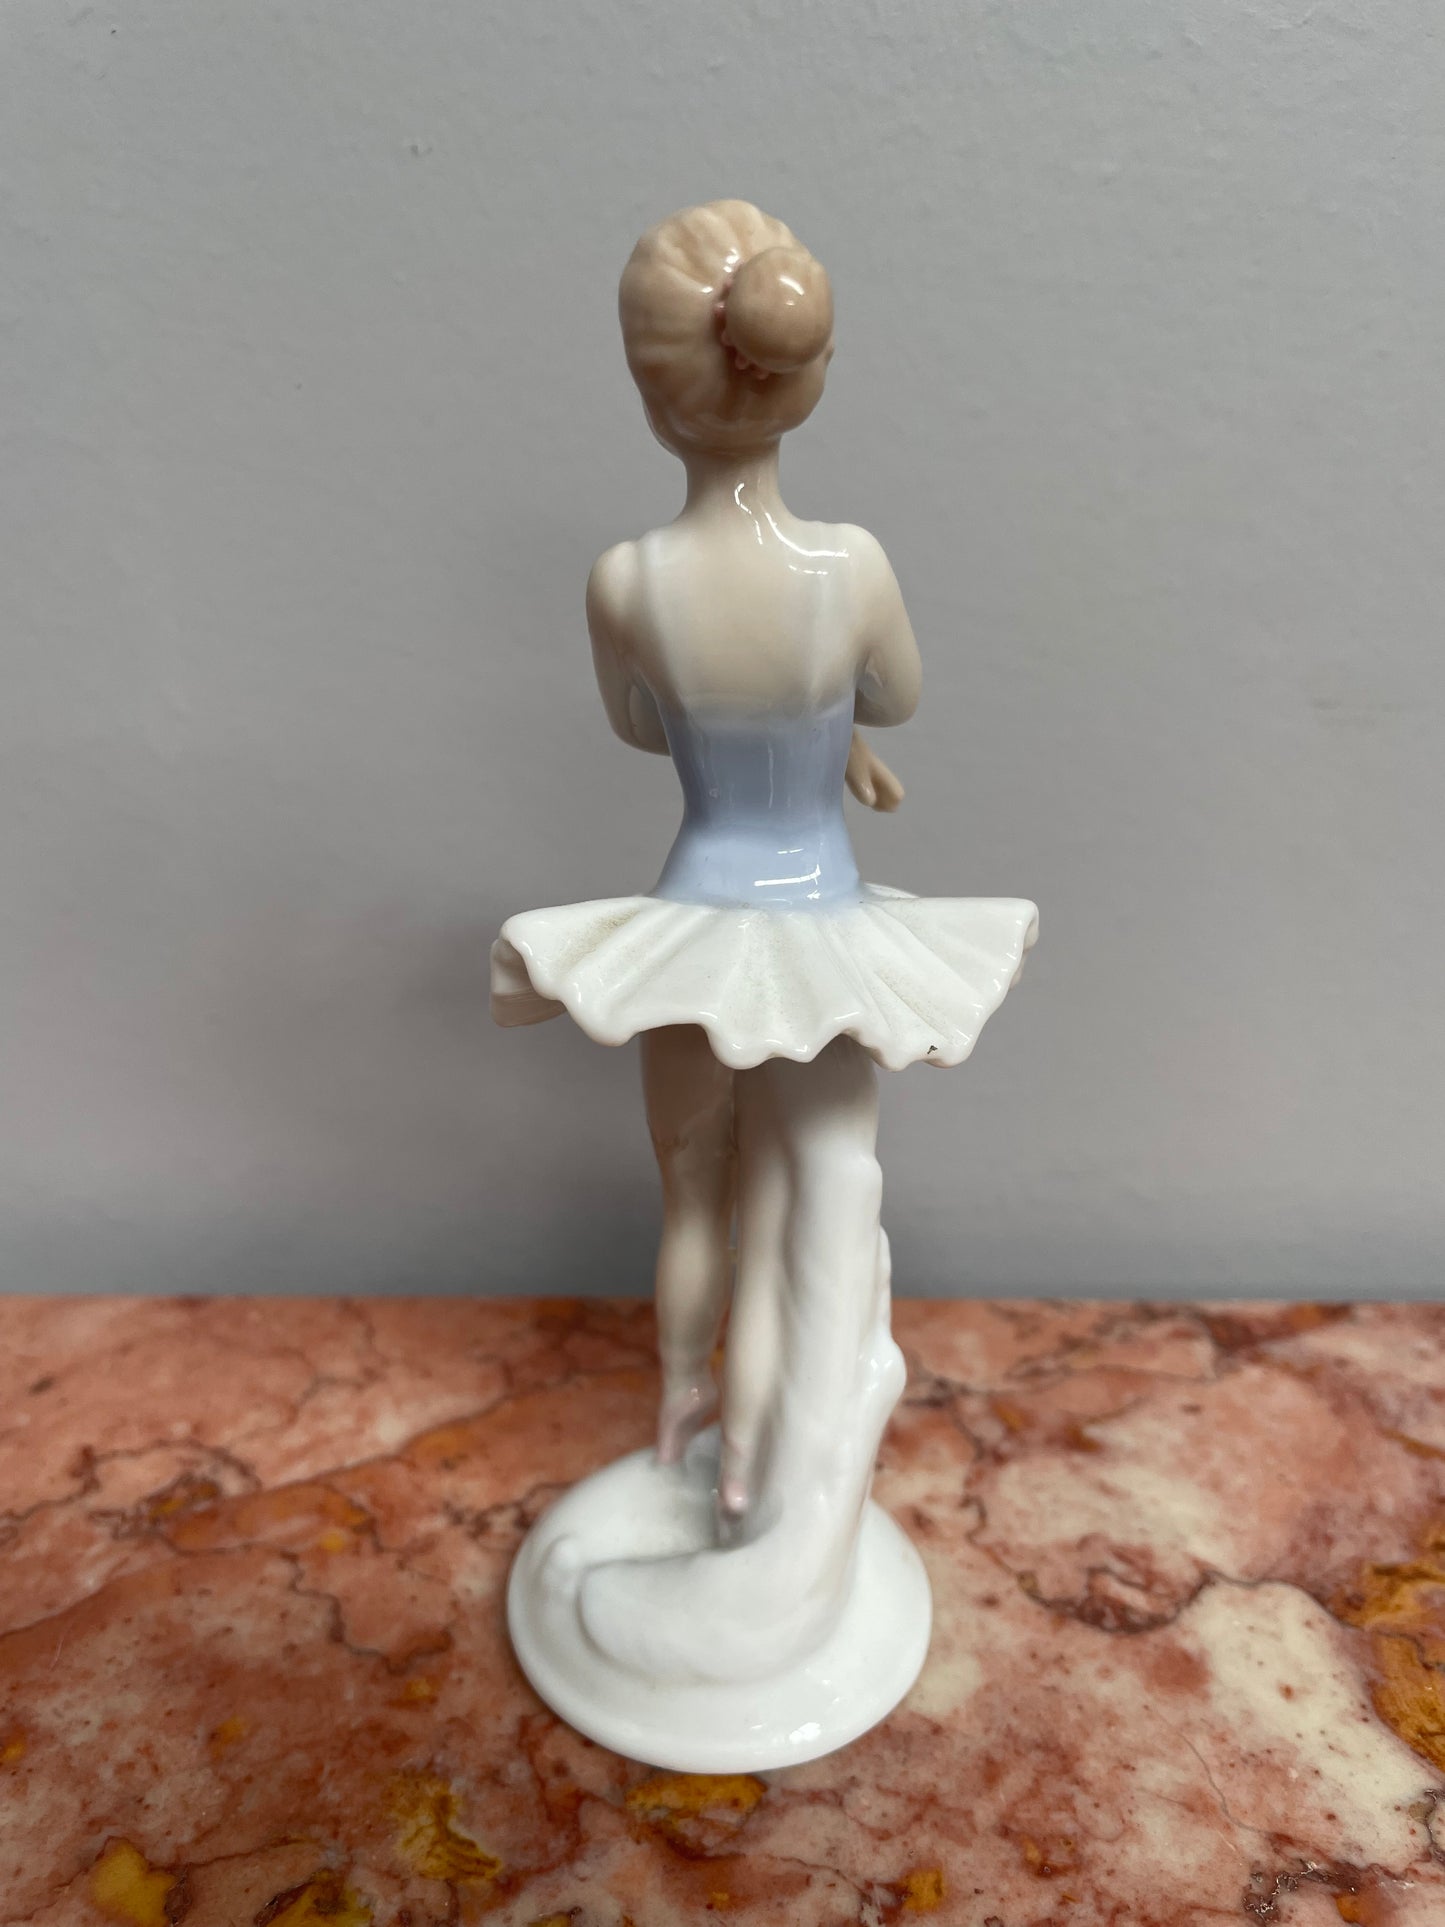 Delicate Vintage Ballet Dancer